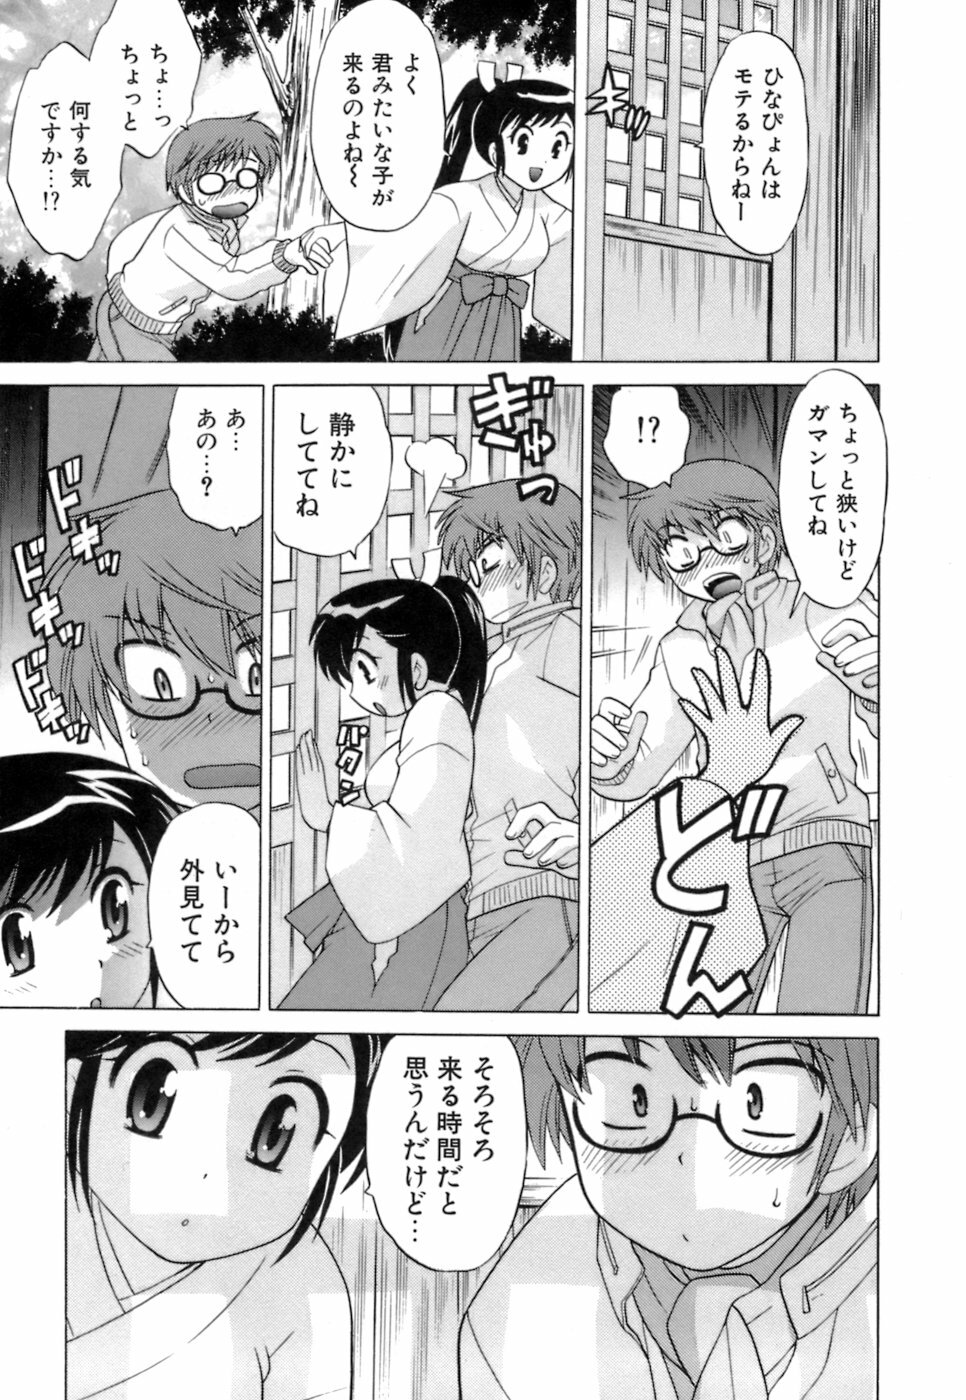 [Kotono Wakako] Miko Moe 1 page 17 full